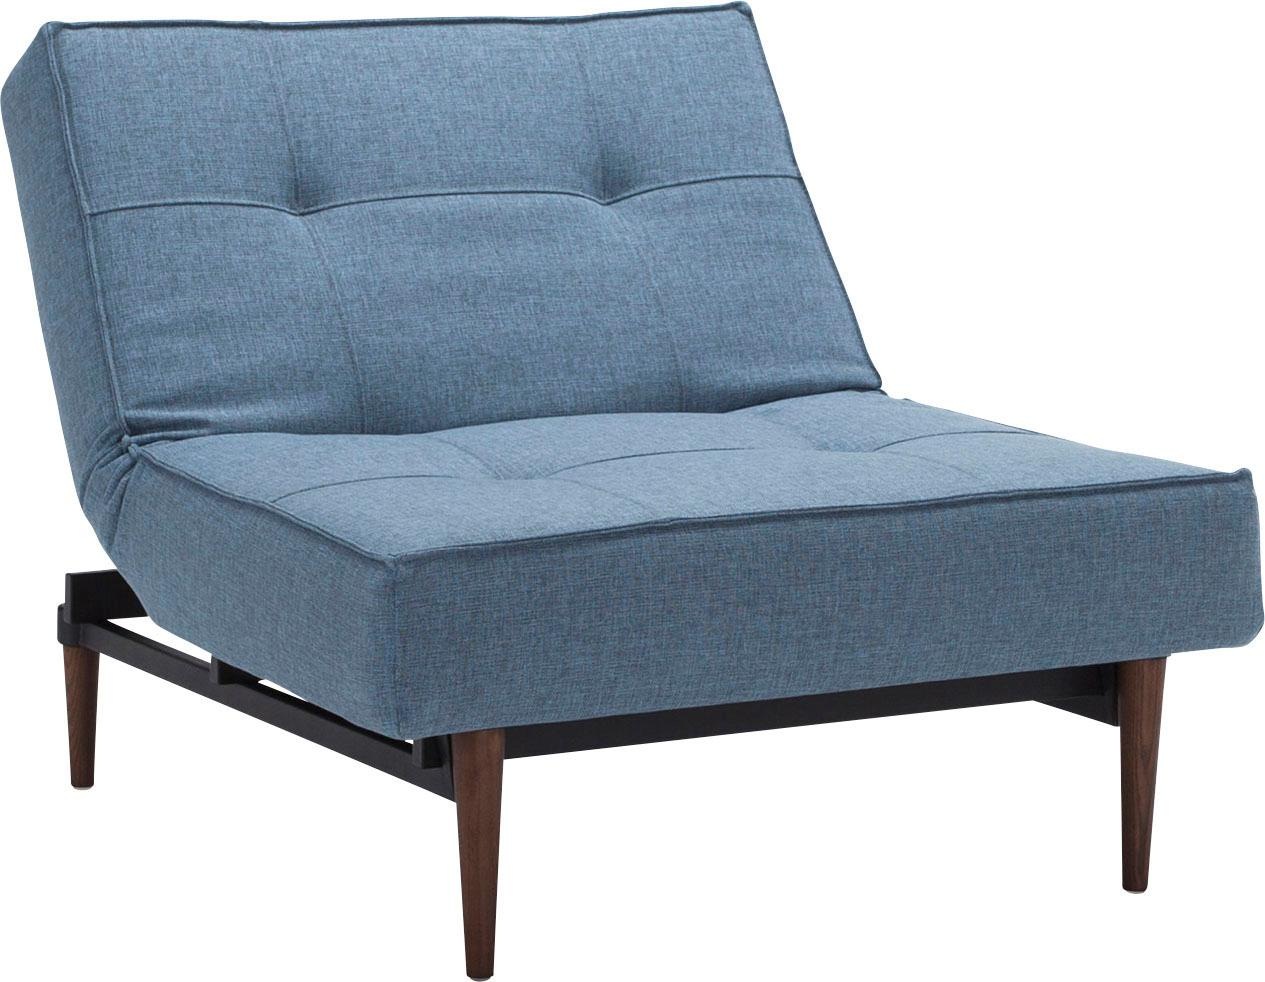 INNOVATION LIVING ™ Sessel kaufen dunklen skandinavischen in Design mit »Splitback«, auf Beinen, Raten Styletto